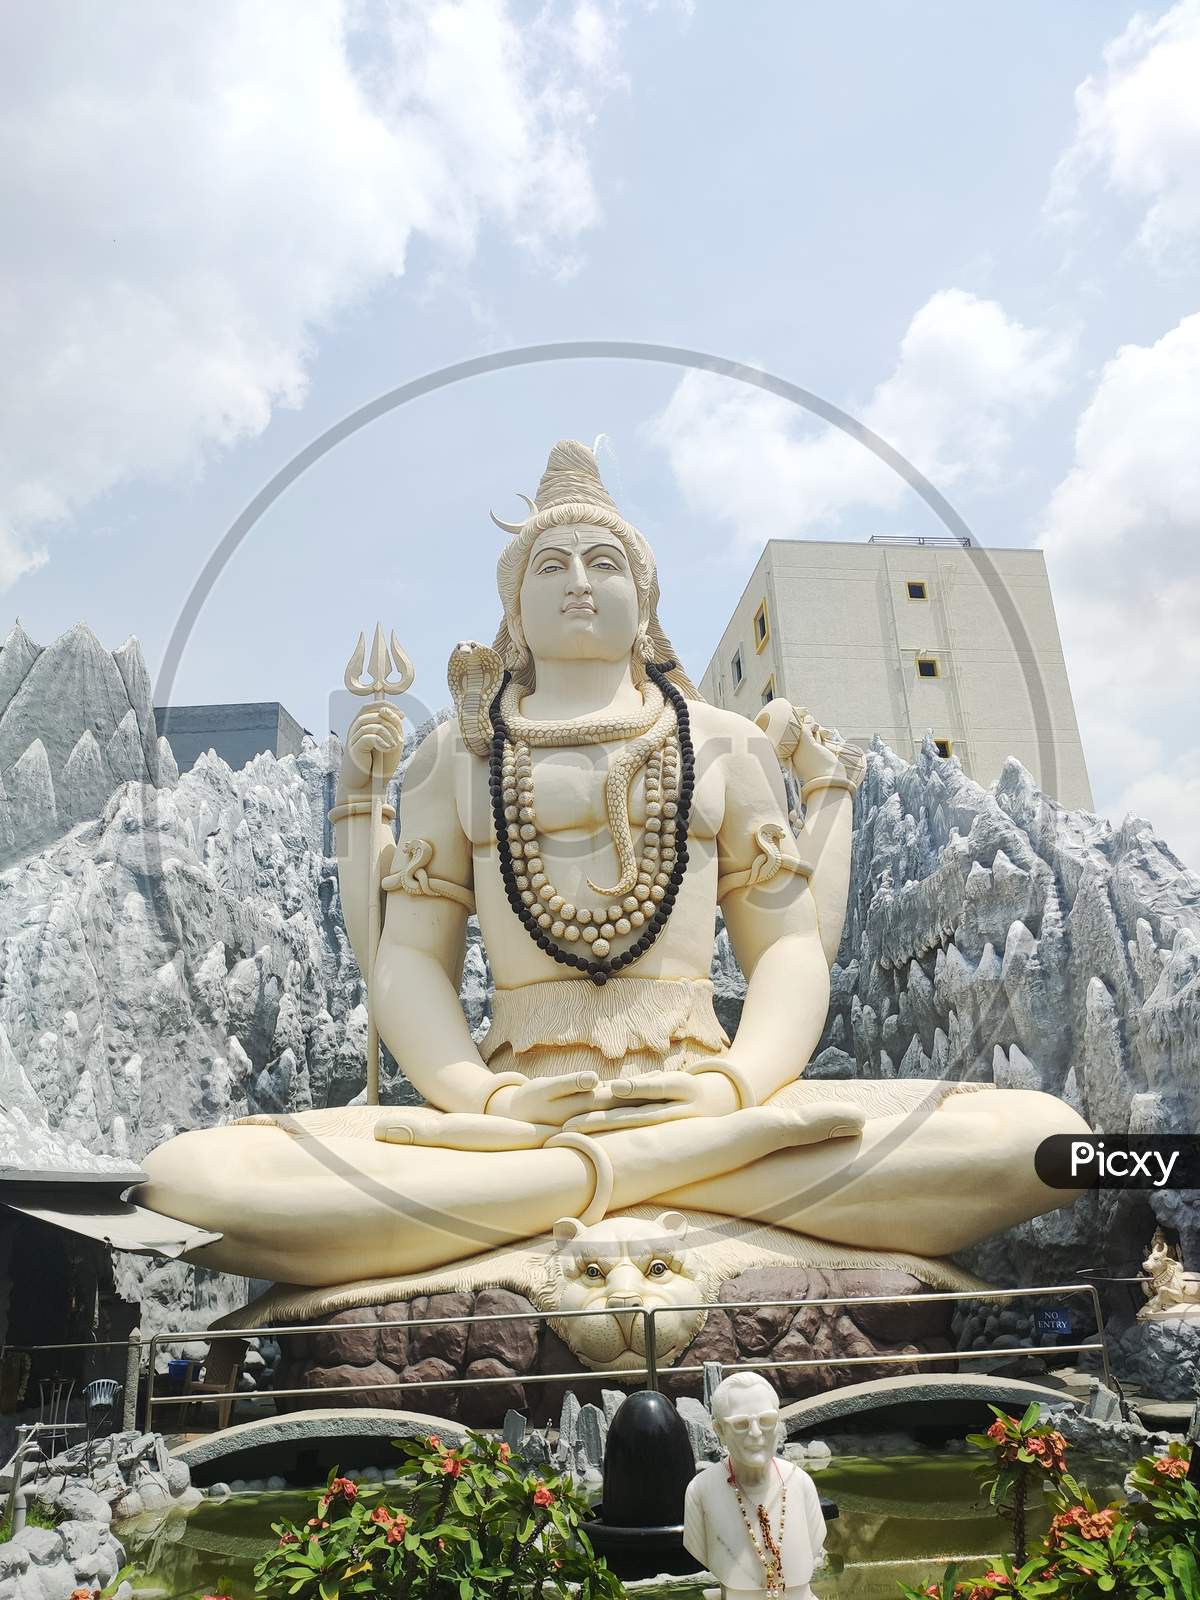 Lord shiva from Shivoham Shiva Temple